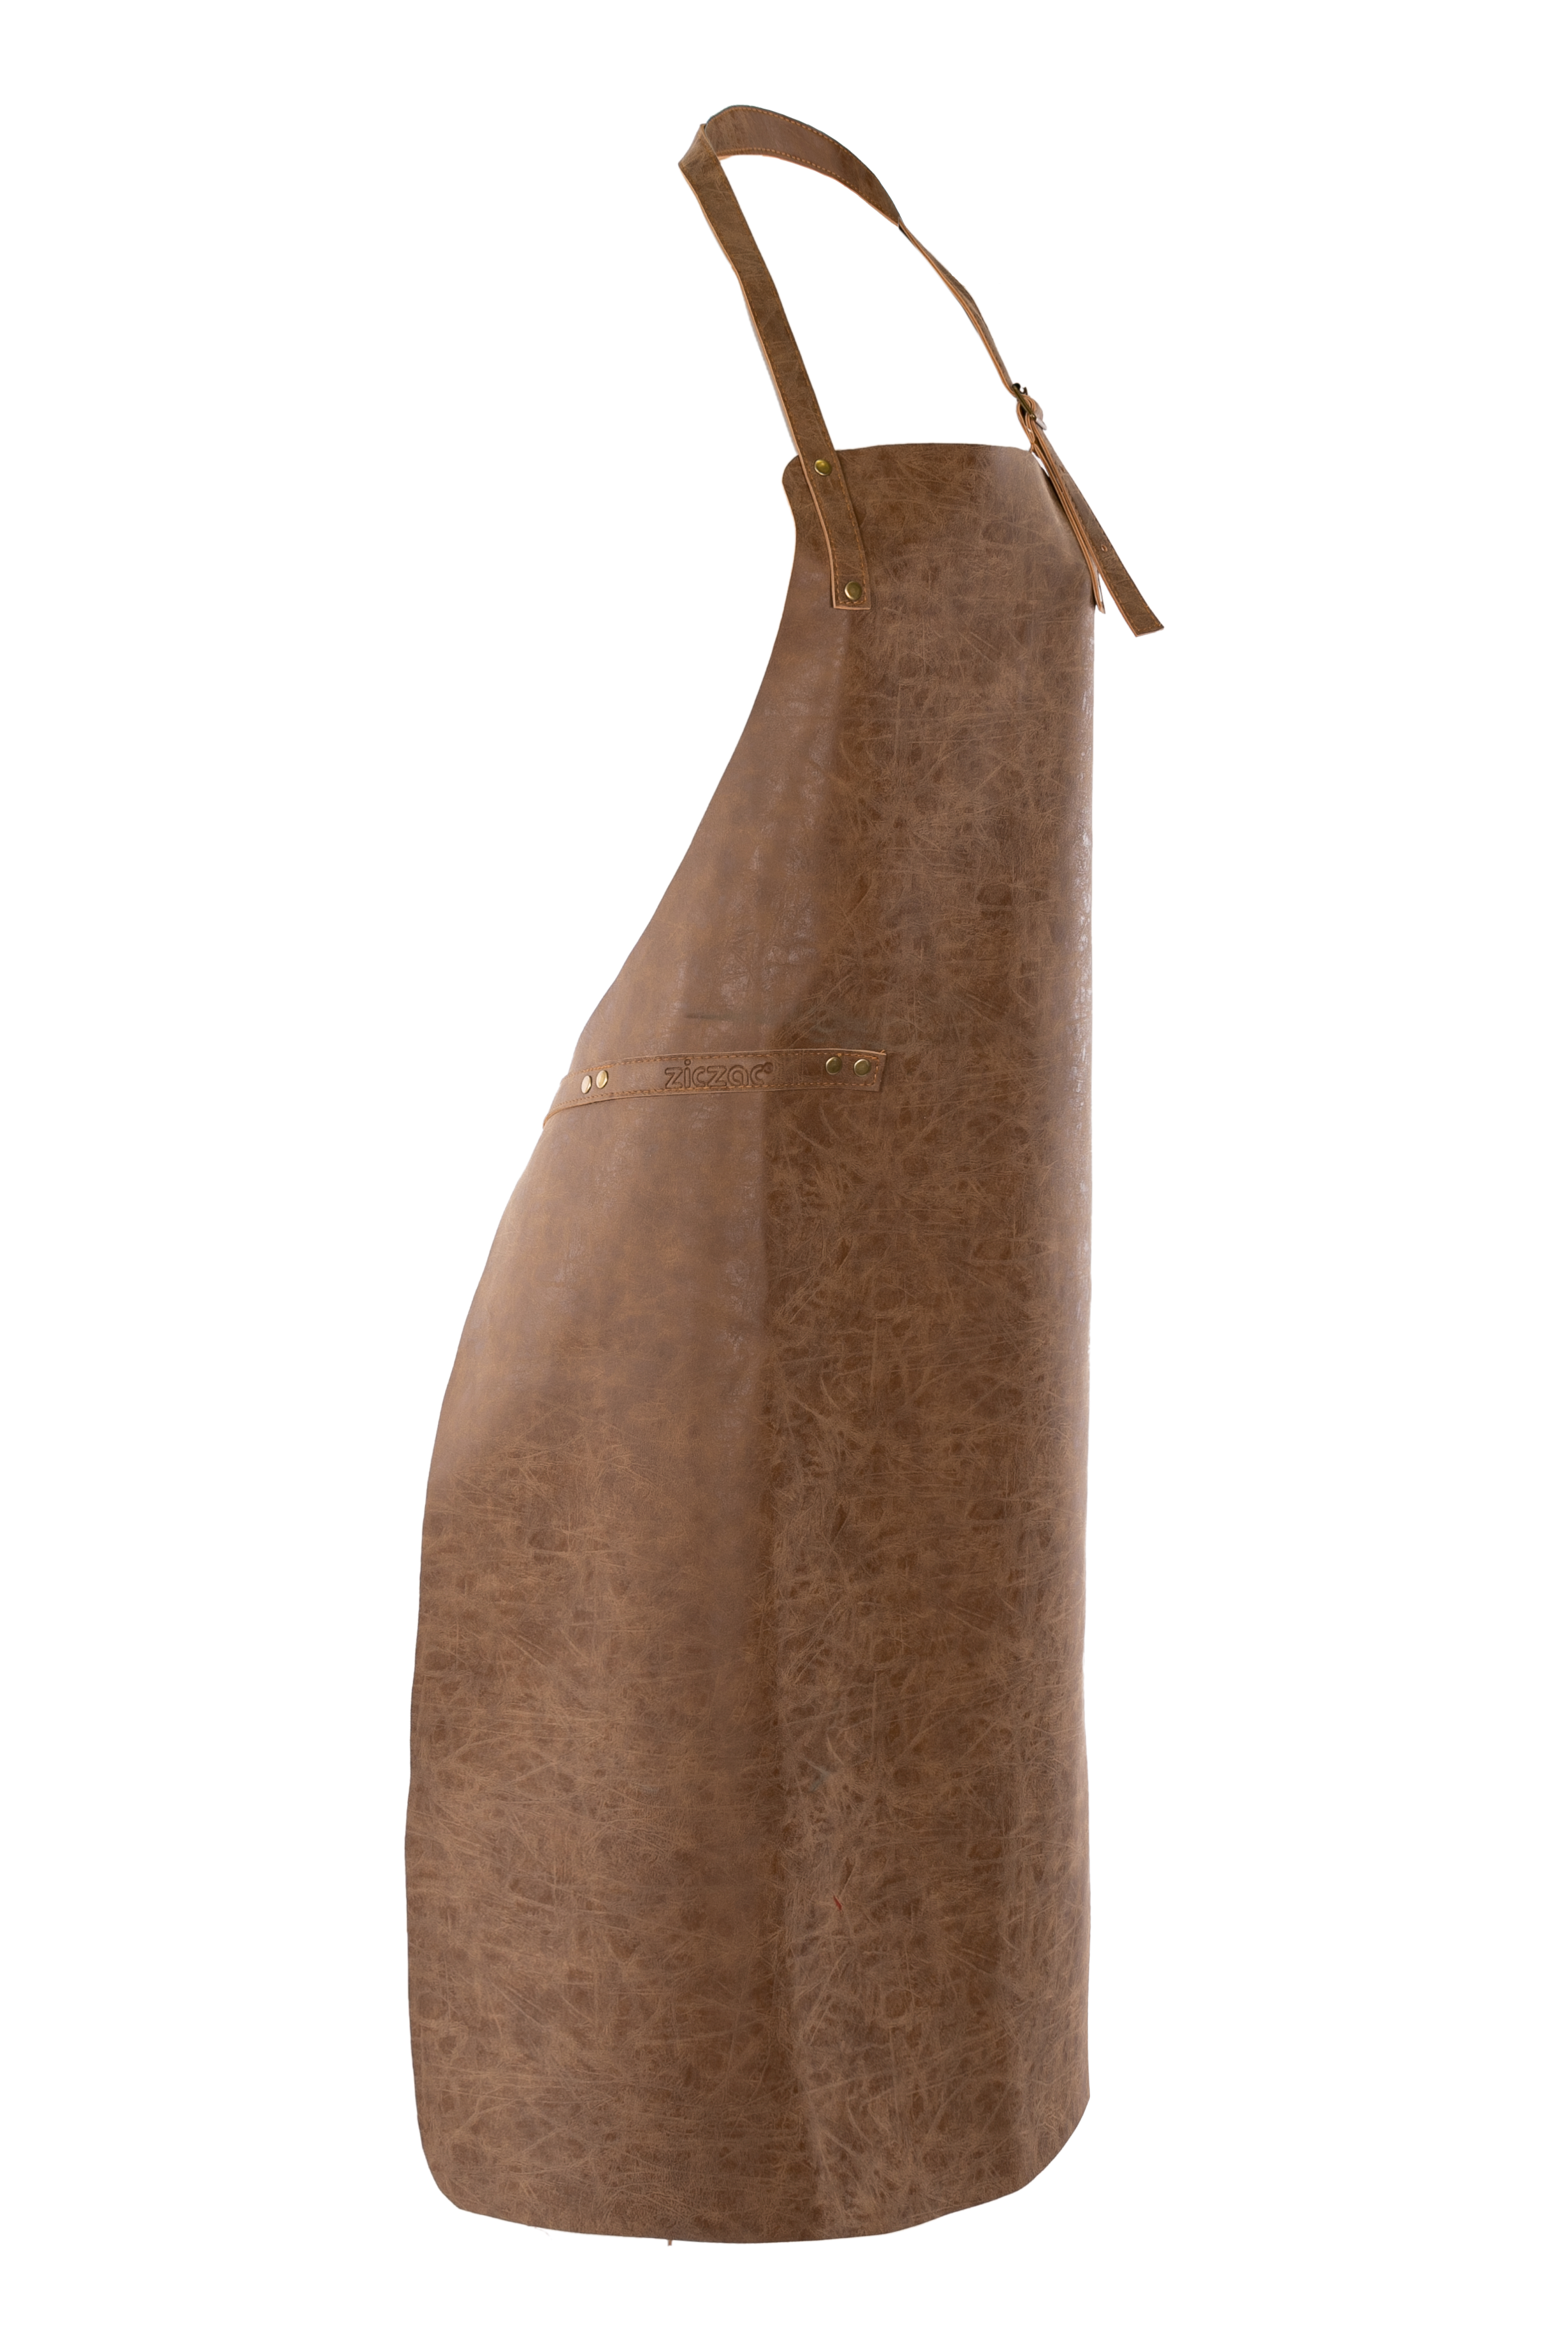 Apron TRUMAN (Towel loop - no pocket - opt. Accessory bag), 70x90 cm, walnut